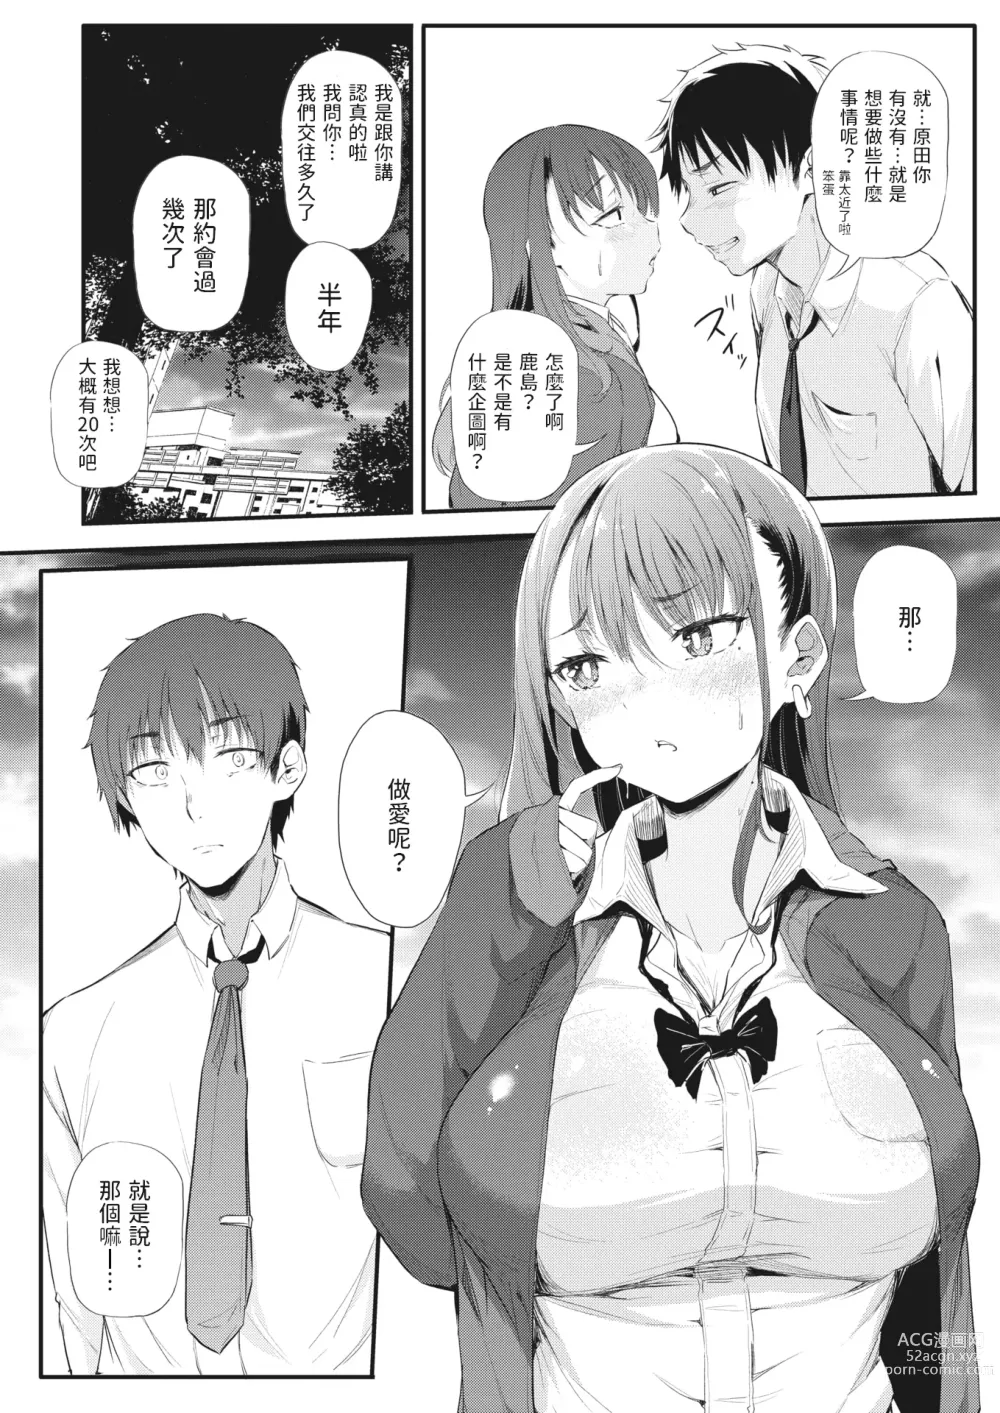 Page 8 of manga Koitsura Ichatsuiten zo ~Kashima to Harada~